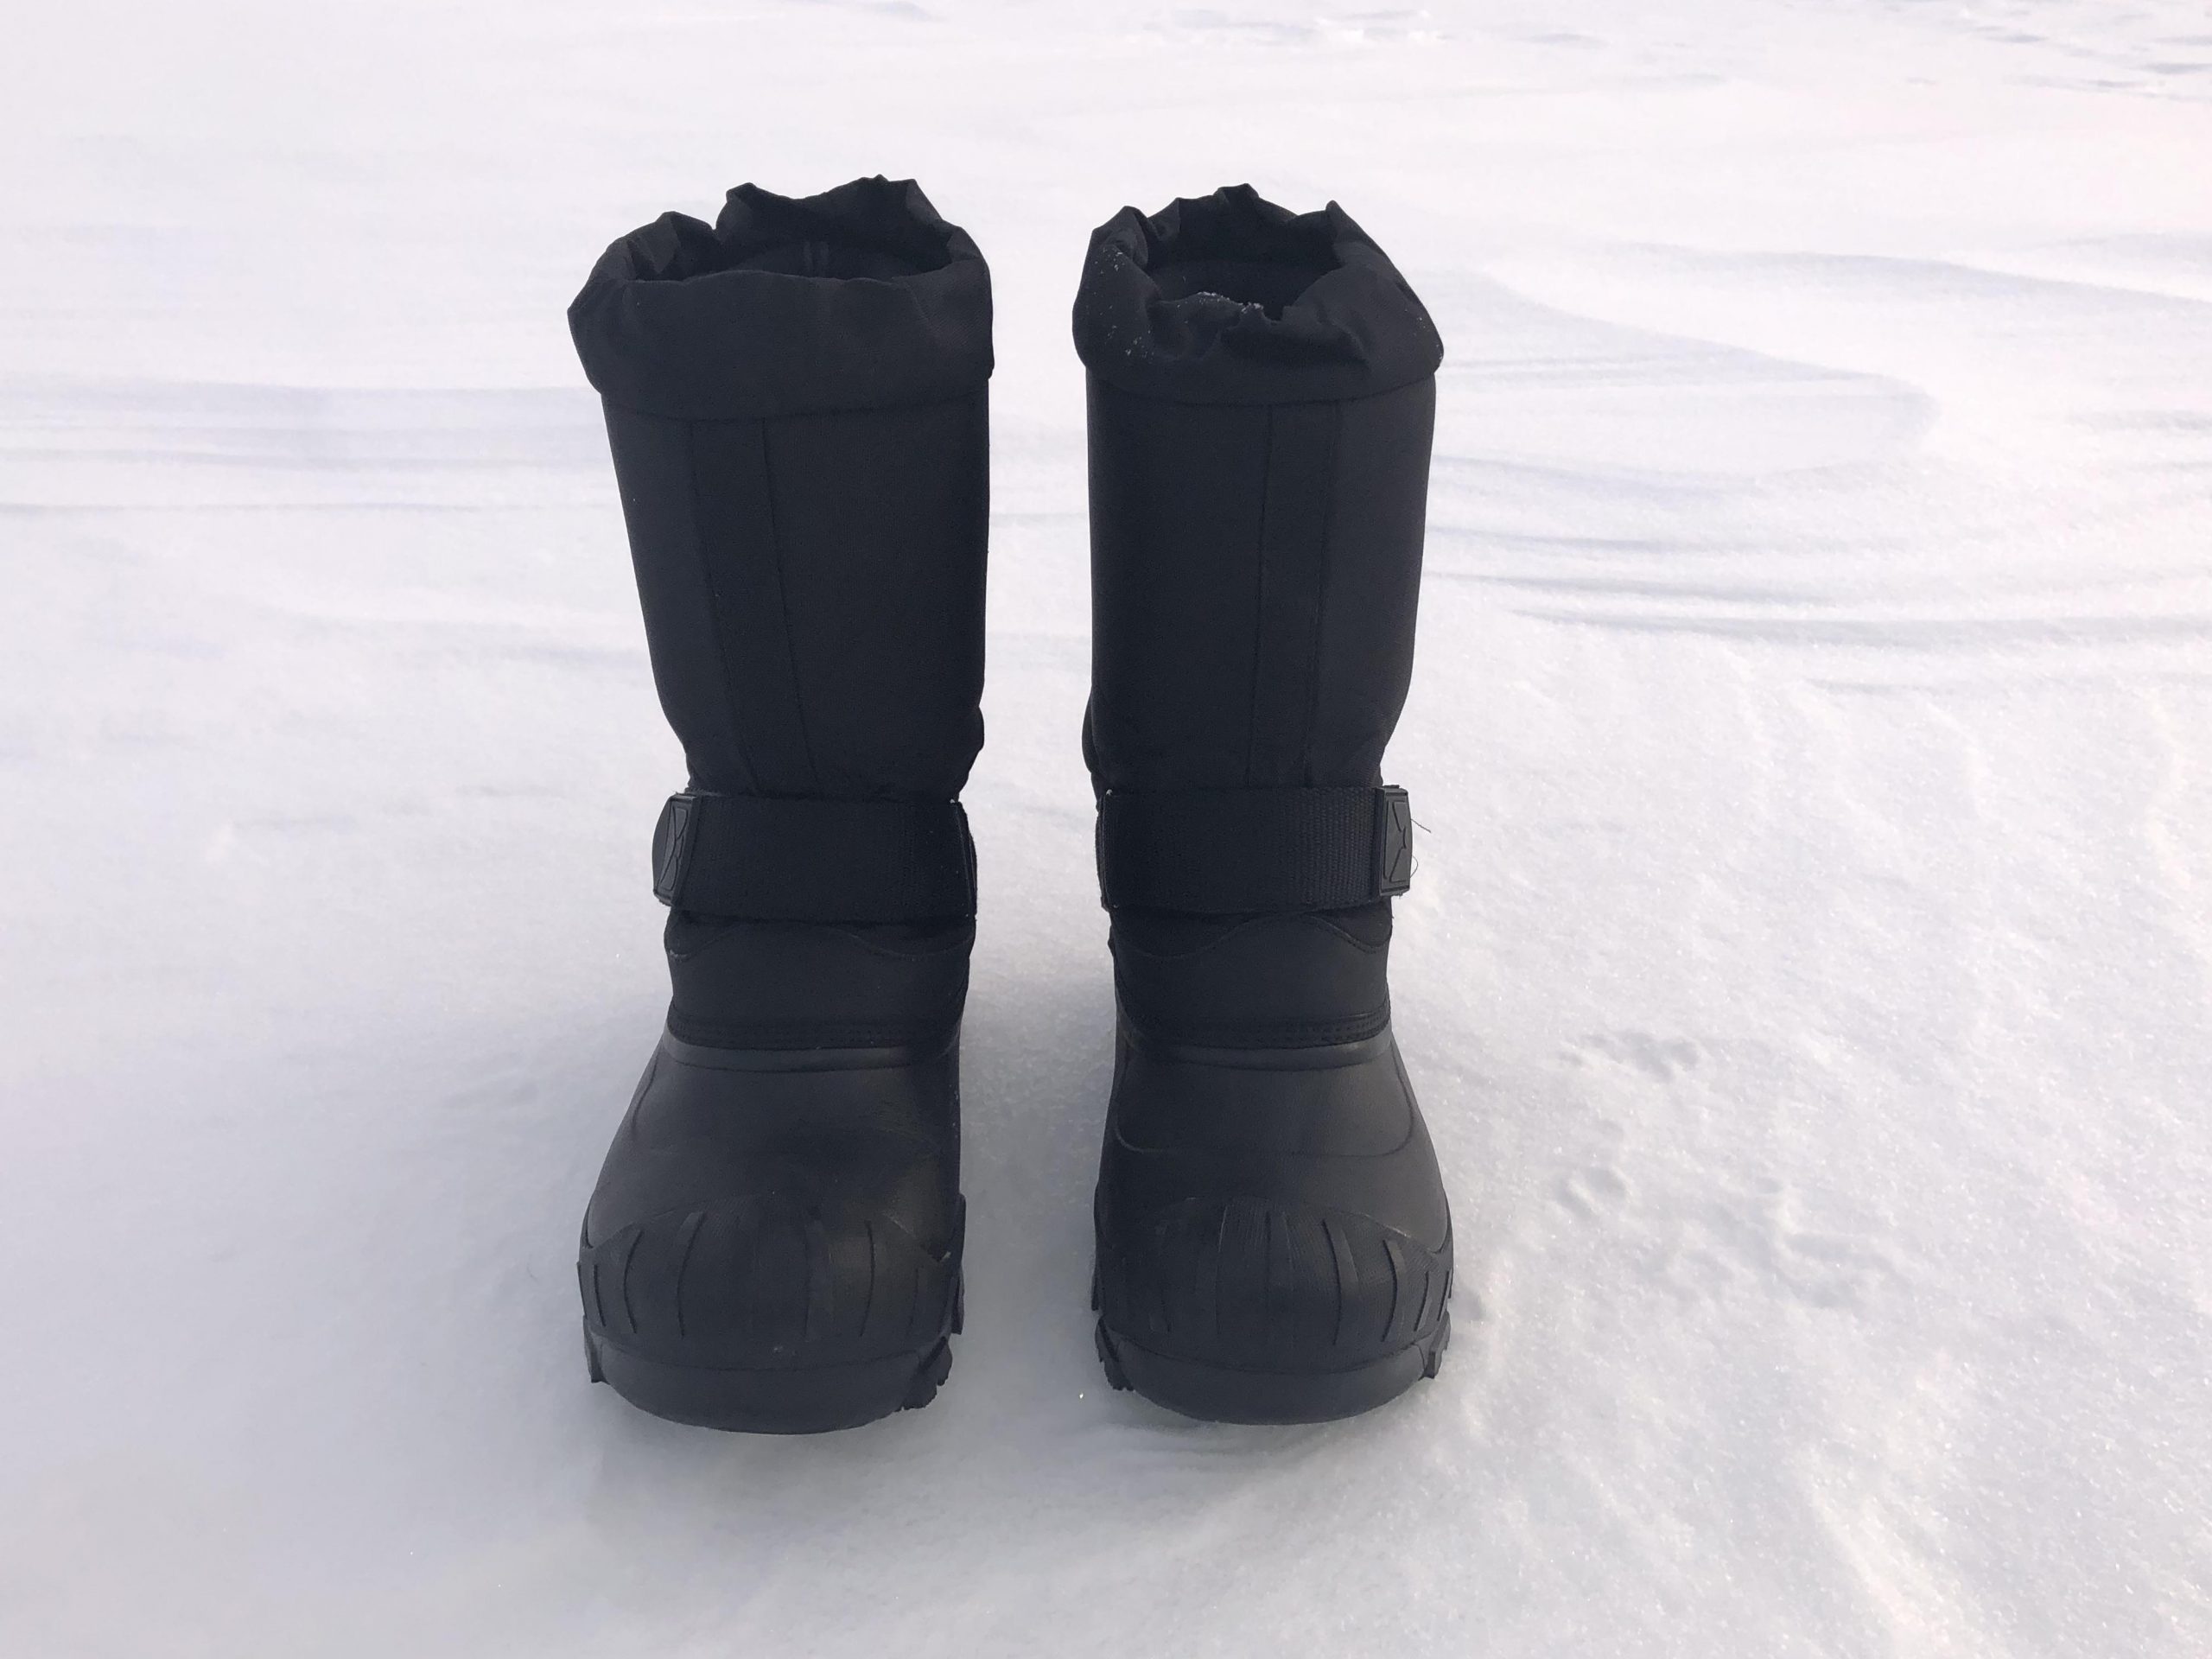 Bottes CKX Yukon – Des bottes qui gardent les pieds bien au chaud